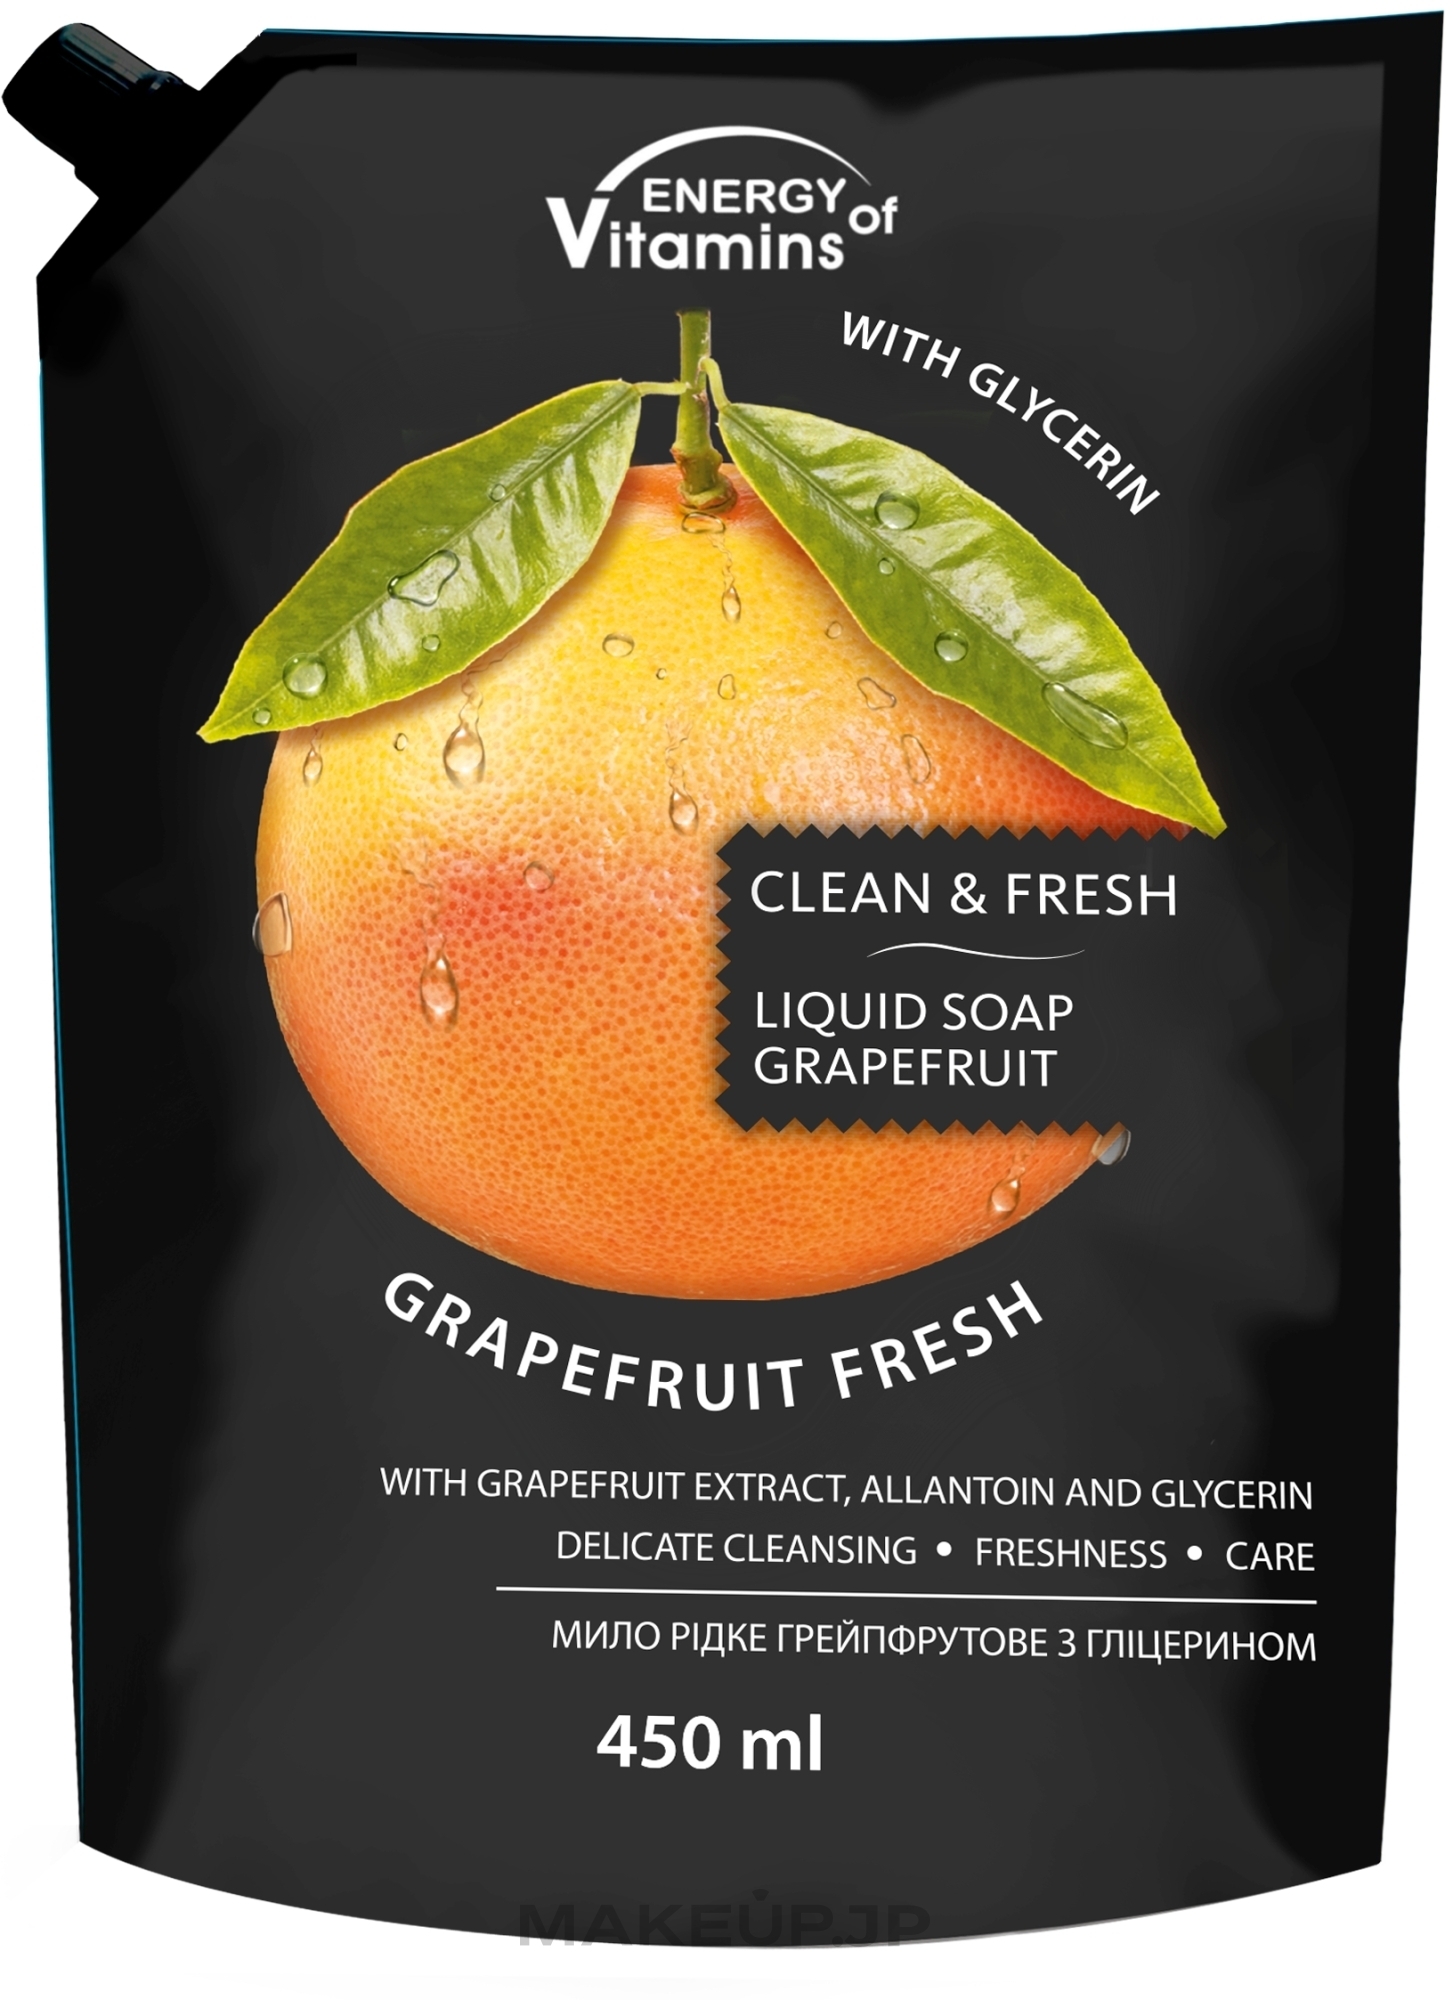 Grapefruit Liquid Glycerin Soap - Vkusnyye Sekrety Energy of Vitamins (doypack) — photo 450 ml